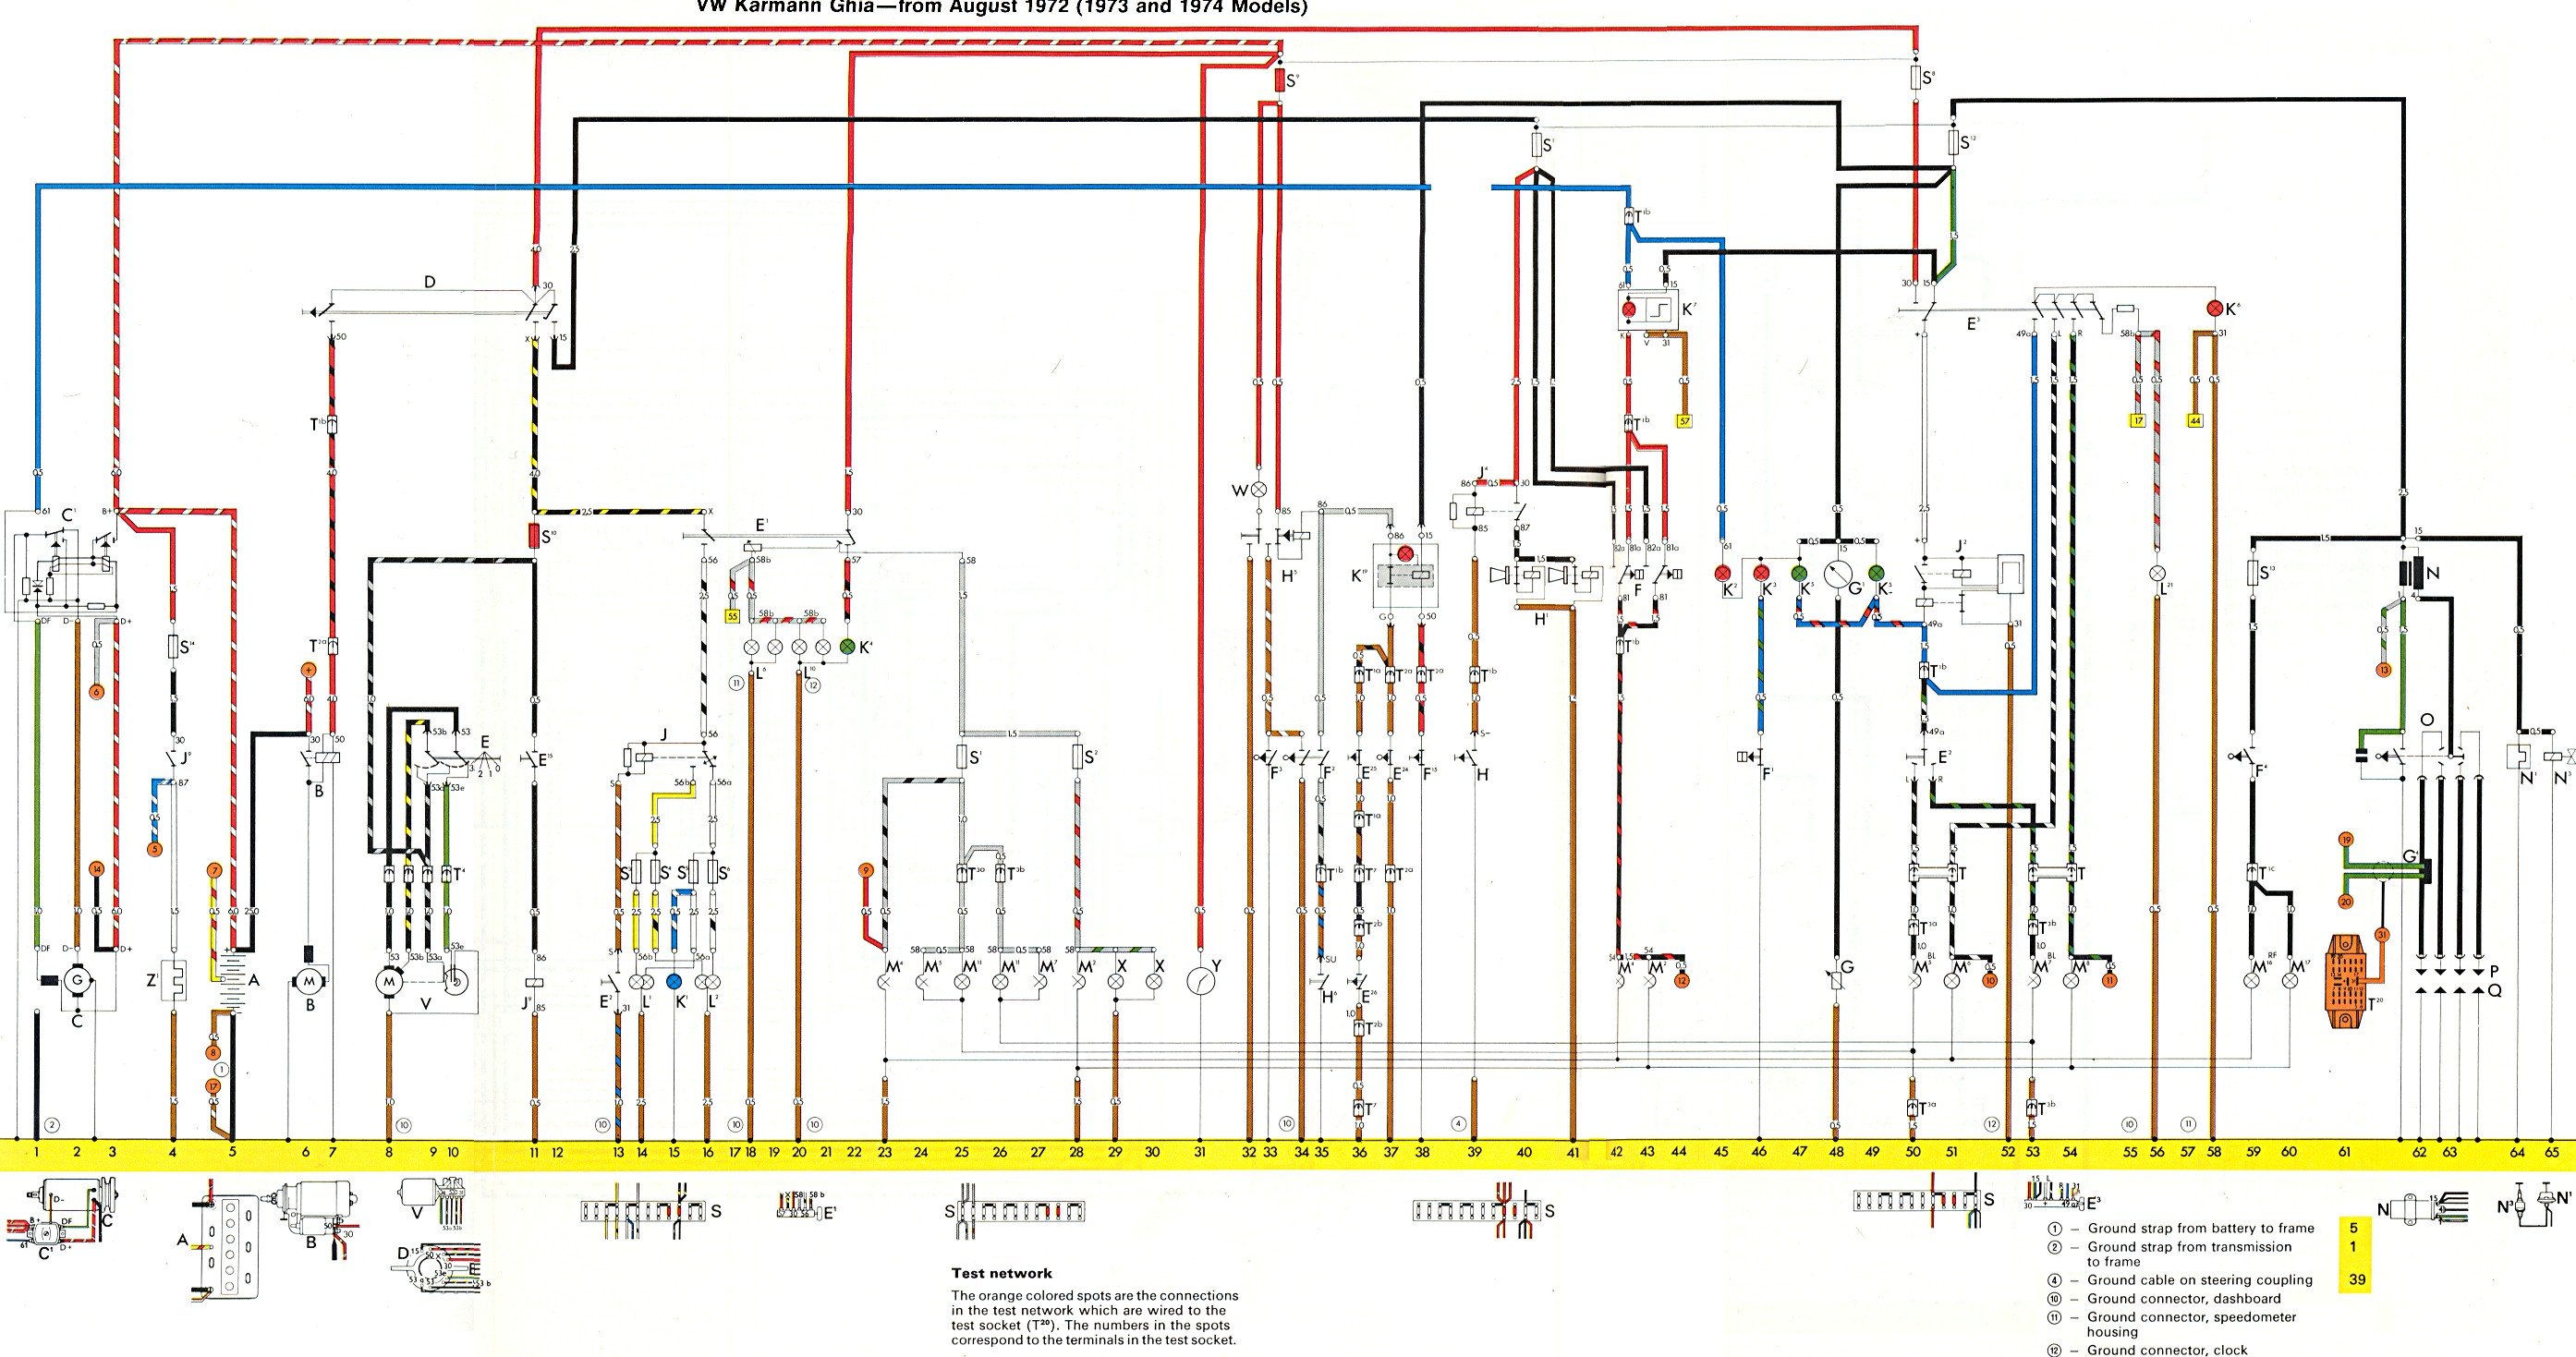 1974 karmann ghia wiring diagram